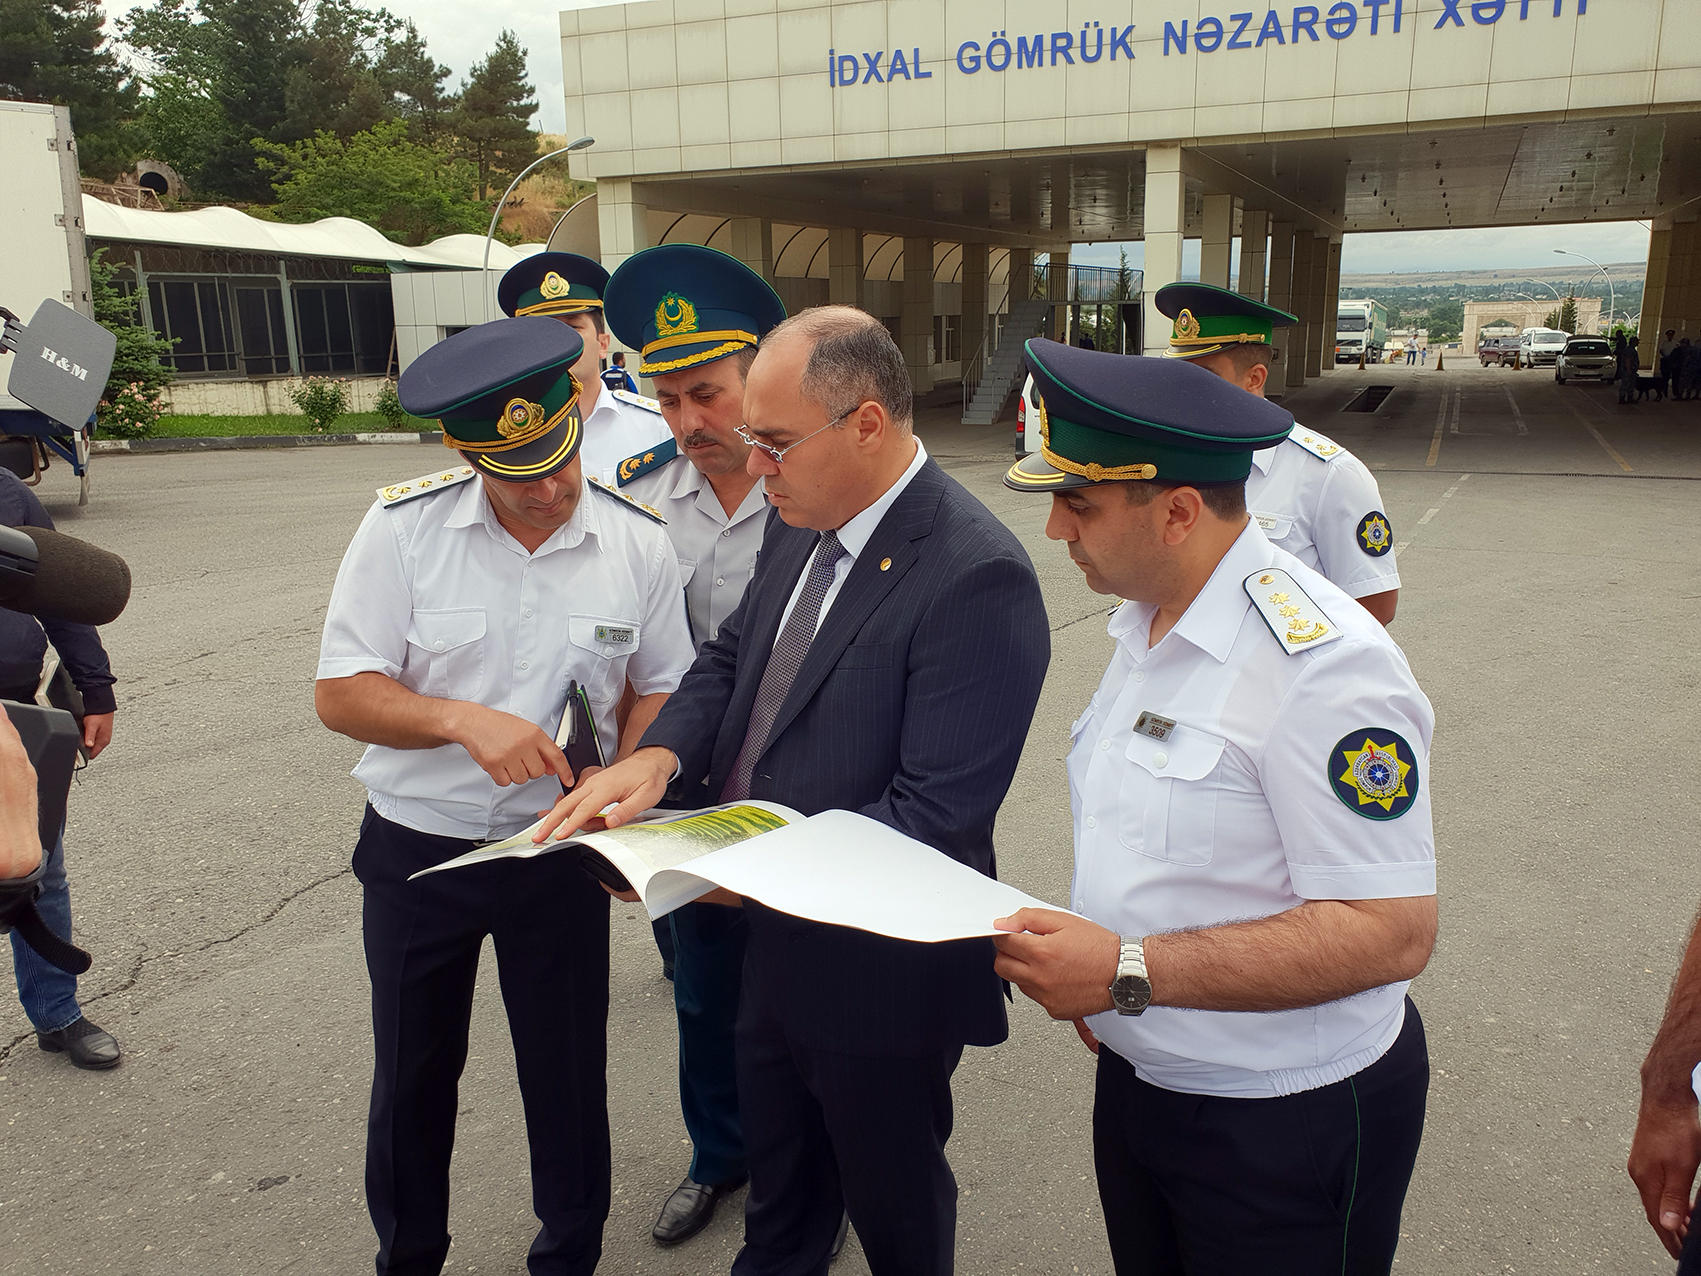 Глава  Госкомтаможни поручил облегчить пересечение азербайджано-российской границы для граждан и транспорта (ФОТО)